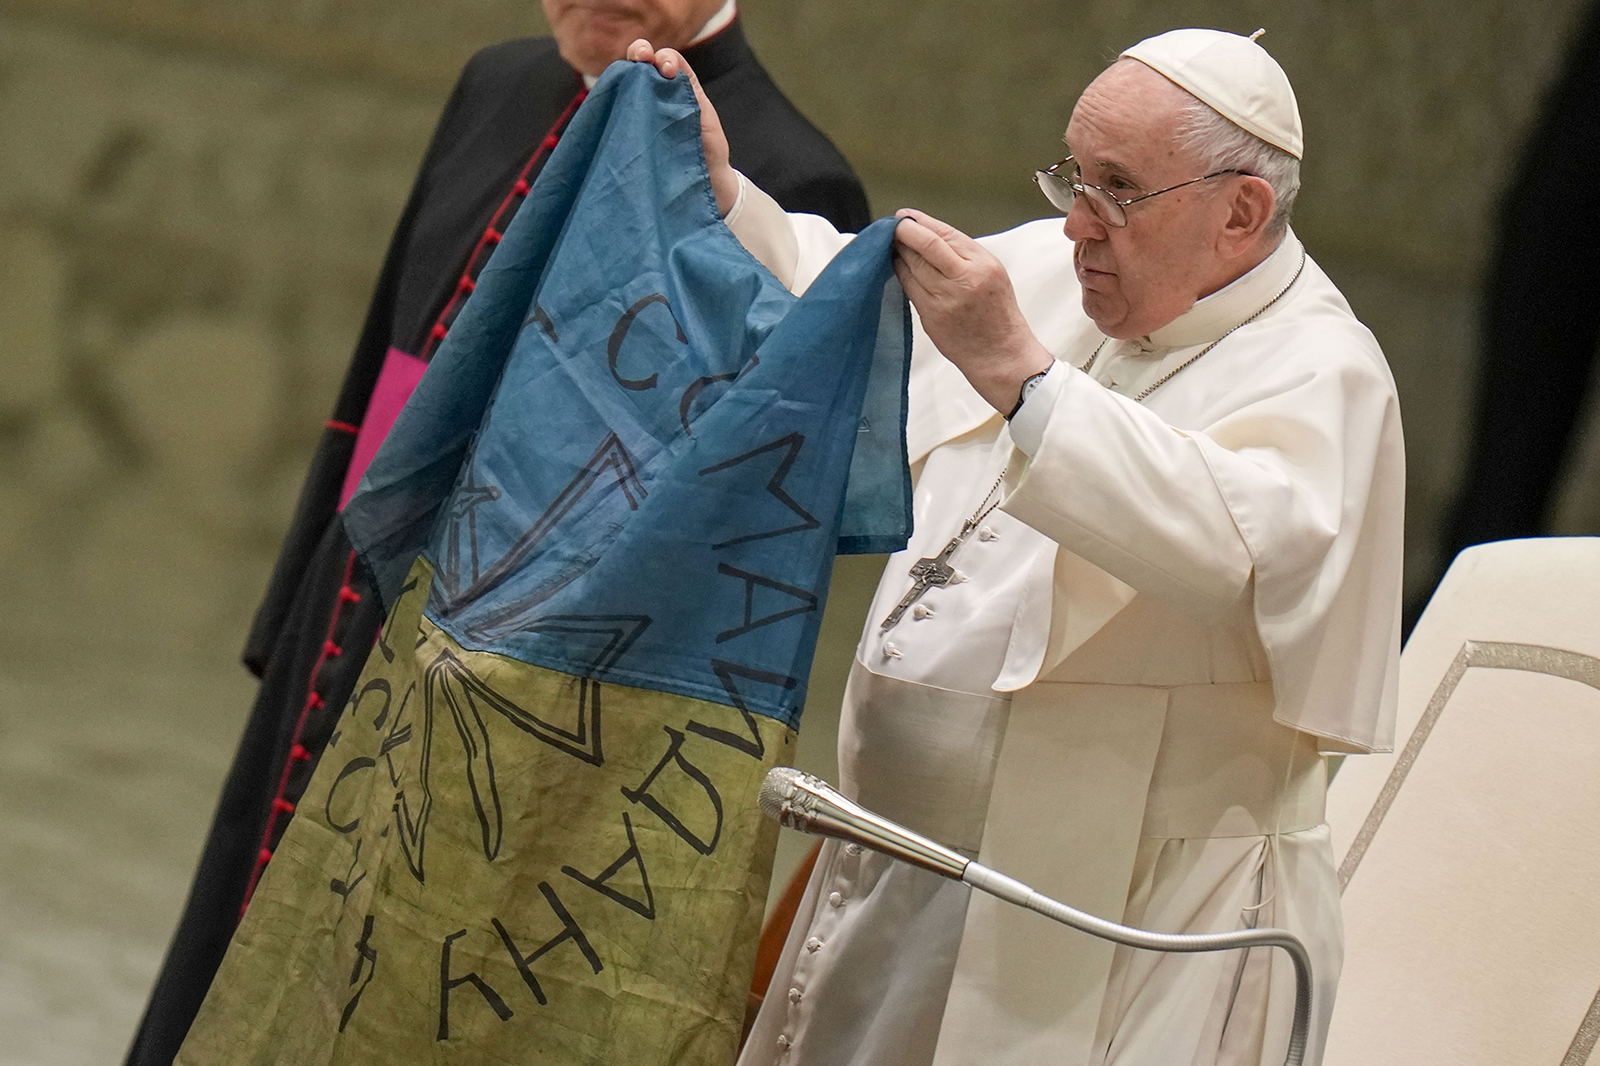 El Papa Francisco muestra la bandera que le trajeron desde Bucha, Ucrania, durante su audiencia general semanal en el Aula Pablo VI, en el Vaticano, el 6 de abril de 2022. (Foto AP/Alessandra Tarantino)